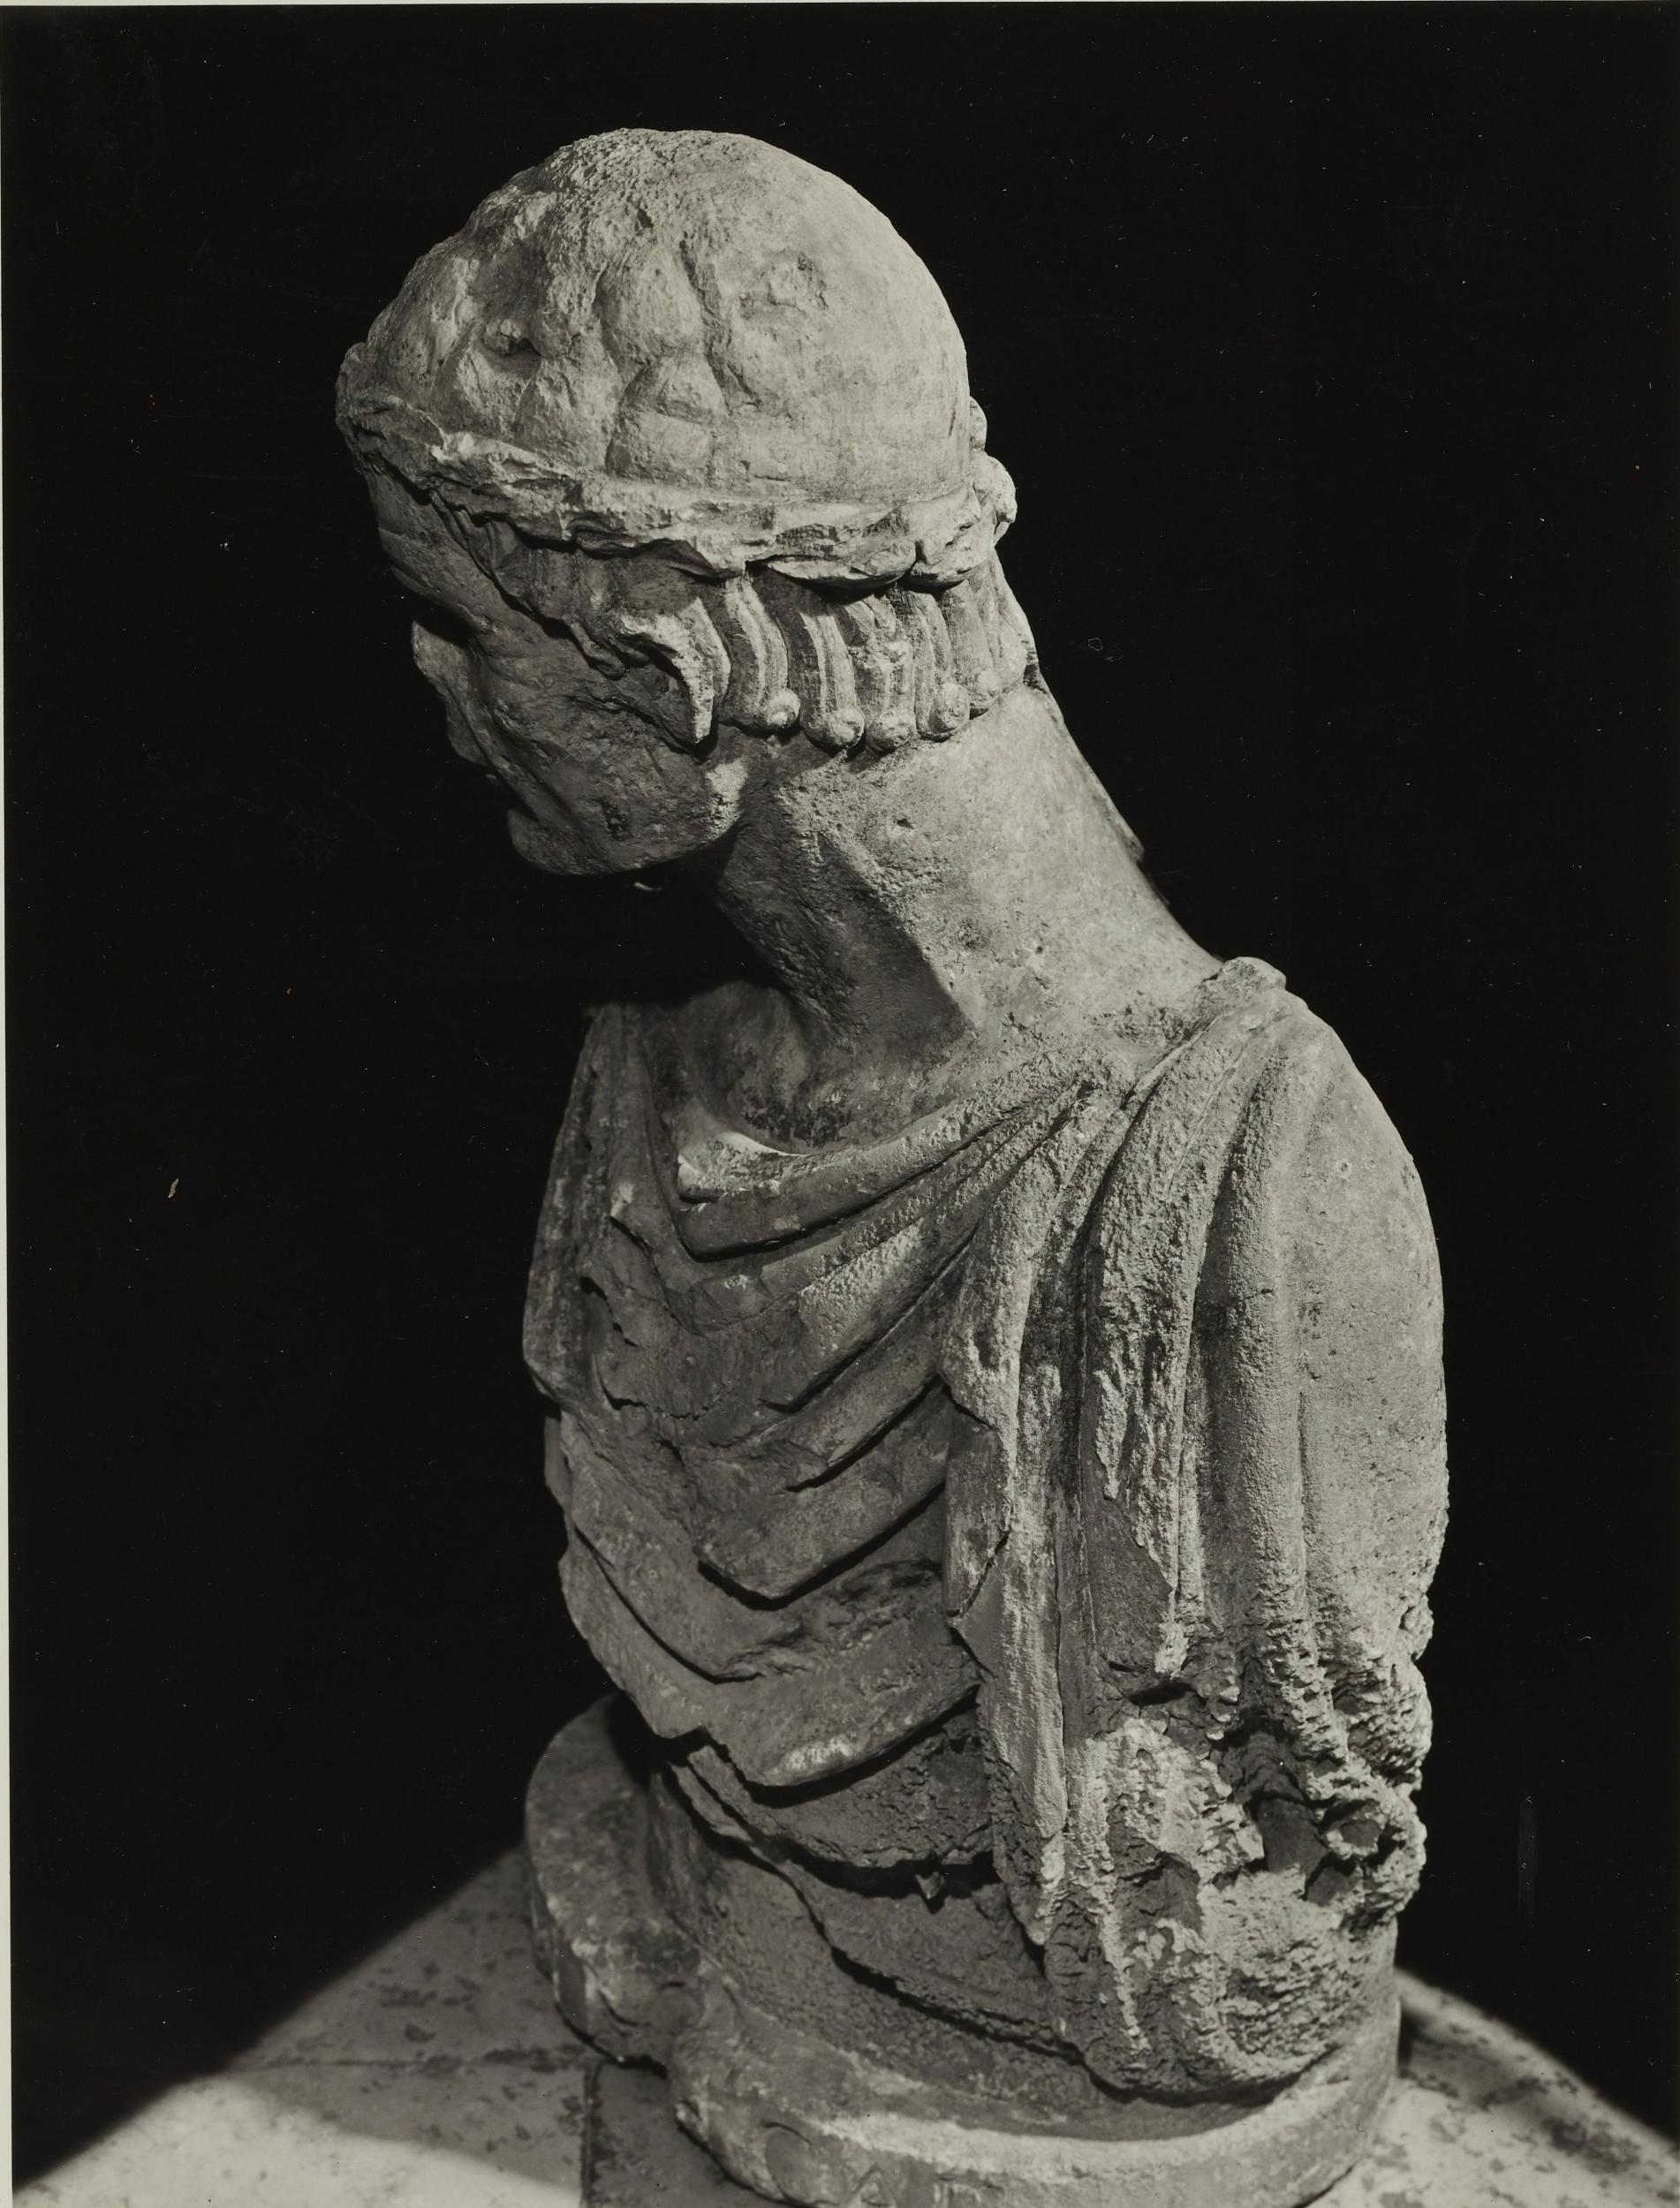 Fotografo non identificato, Barletta - Castello, Museo Civico, busto detto di Federico II, 1953 – 1954, gelatina ai sali d'argento/carta, MPI6023057